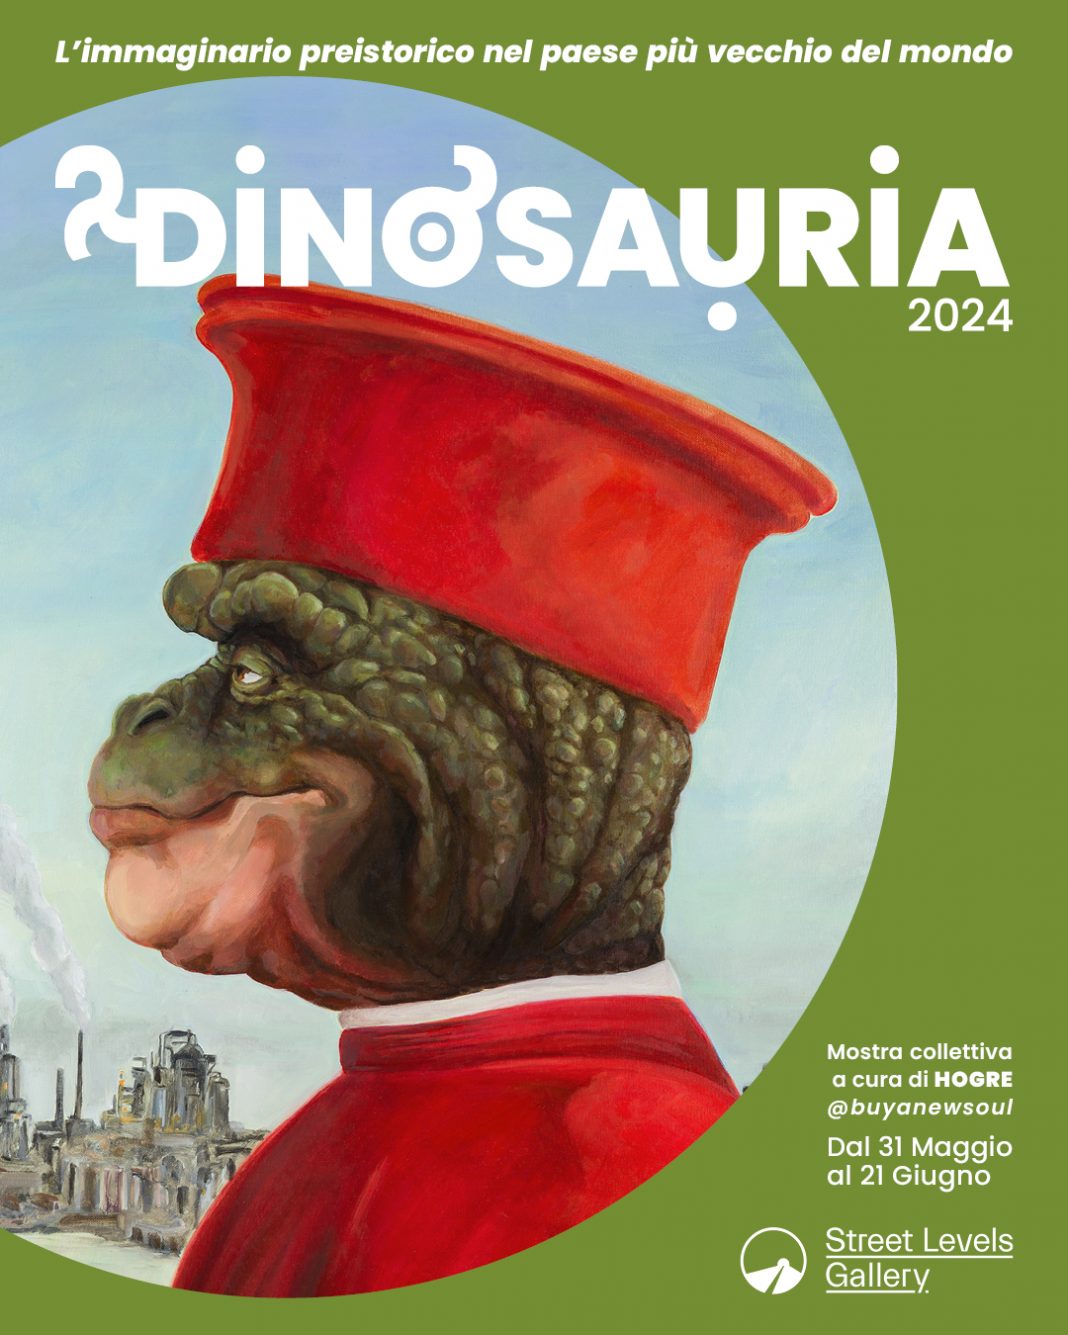 Dinosauria 2024 –  L’immaginario preistorico nel paese più vecchio del mondohttps://www.exibart.com/repository/media/formidable/11/img/fd6/Locandina1-1068x1335.jpg